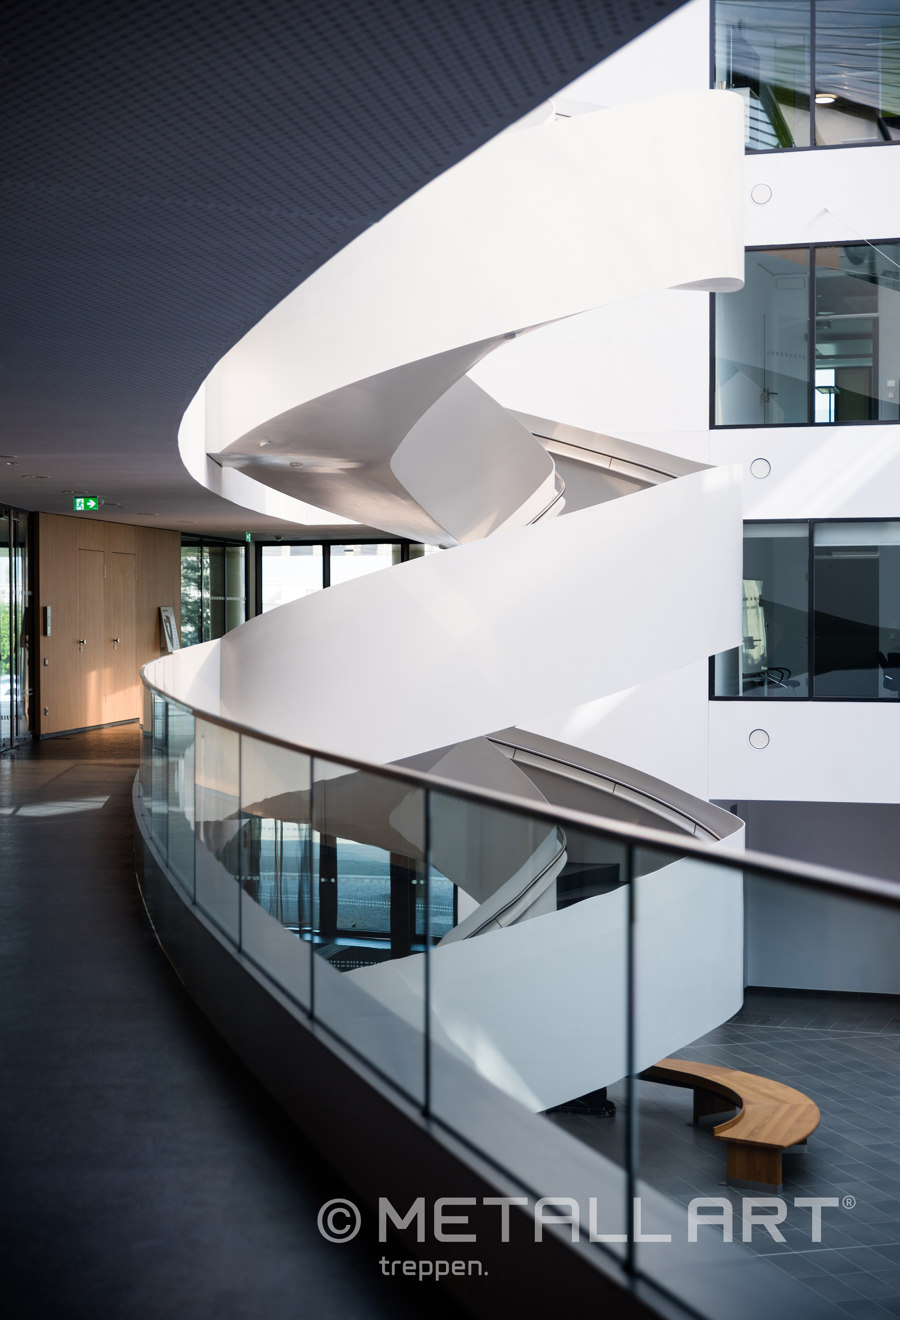 Eindrucksvolle Designtreppe im Lilienthalhaus Braunschweig | Herstellerreferenzen | MetallArt Treppen